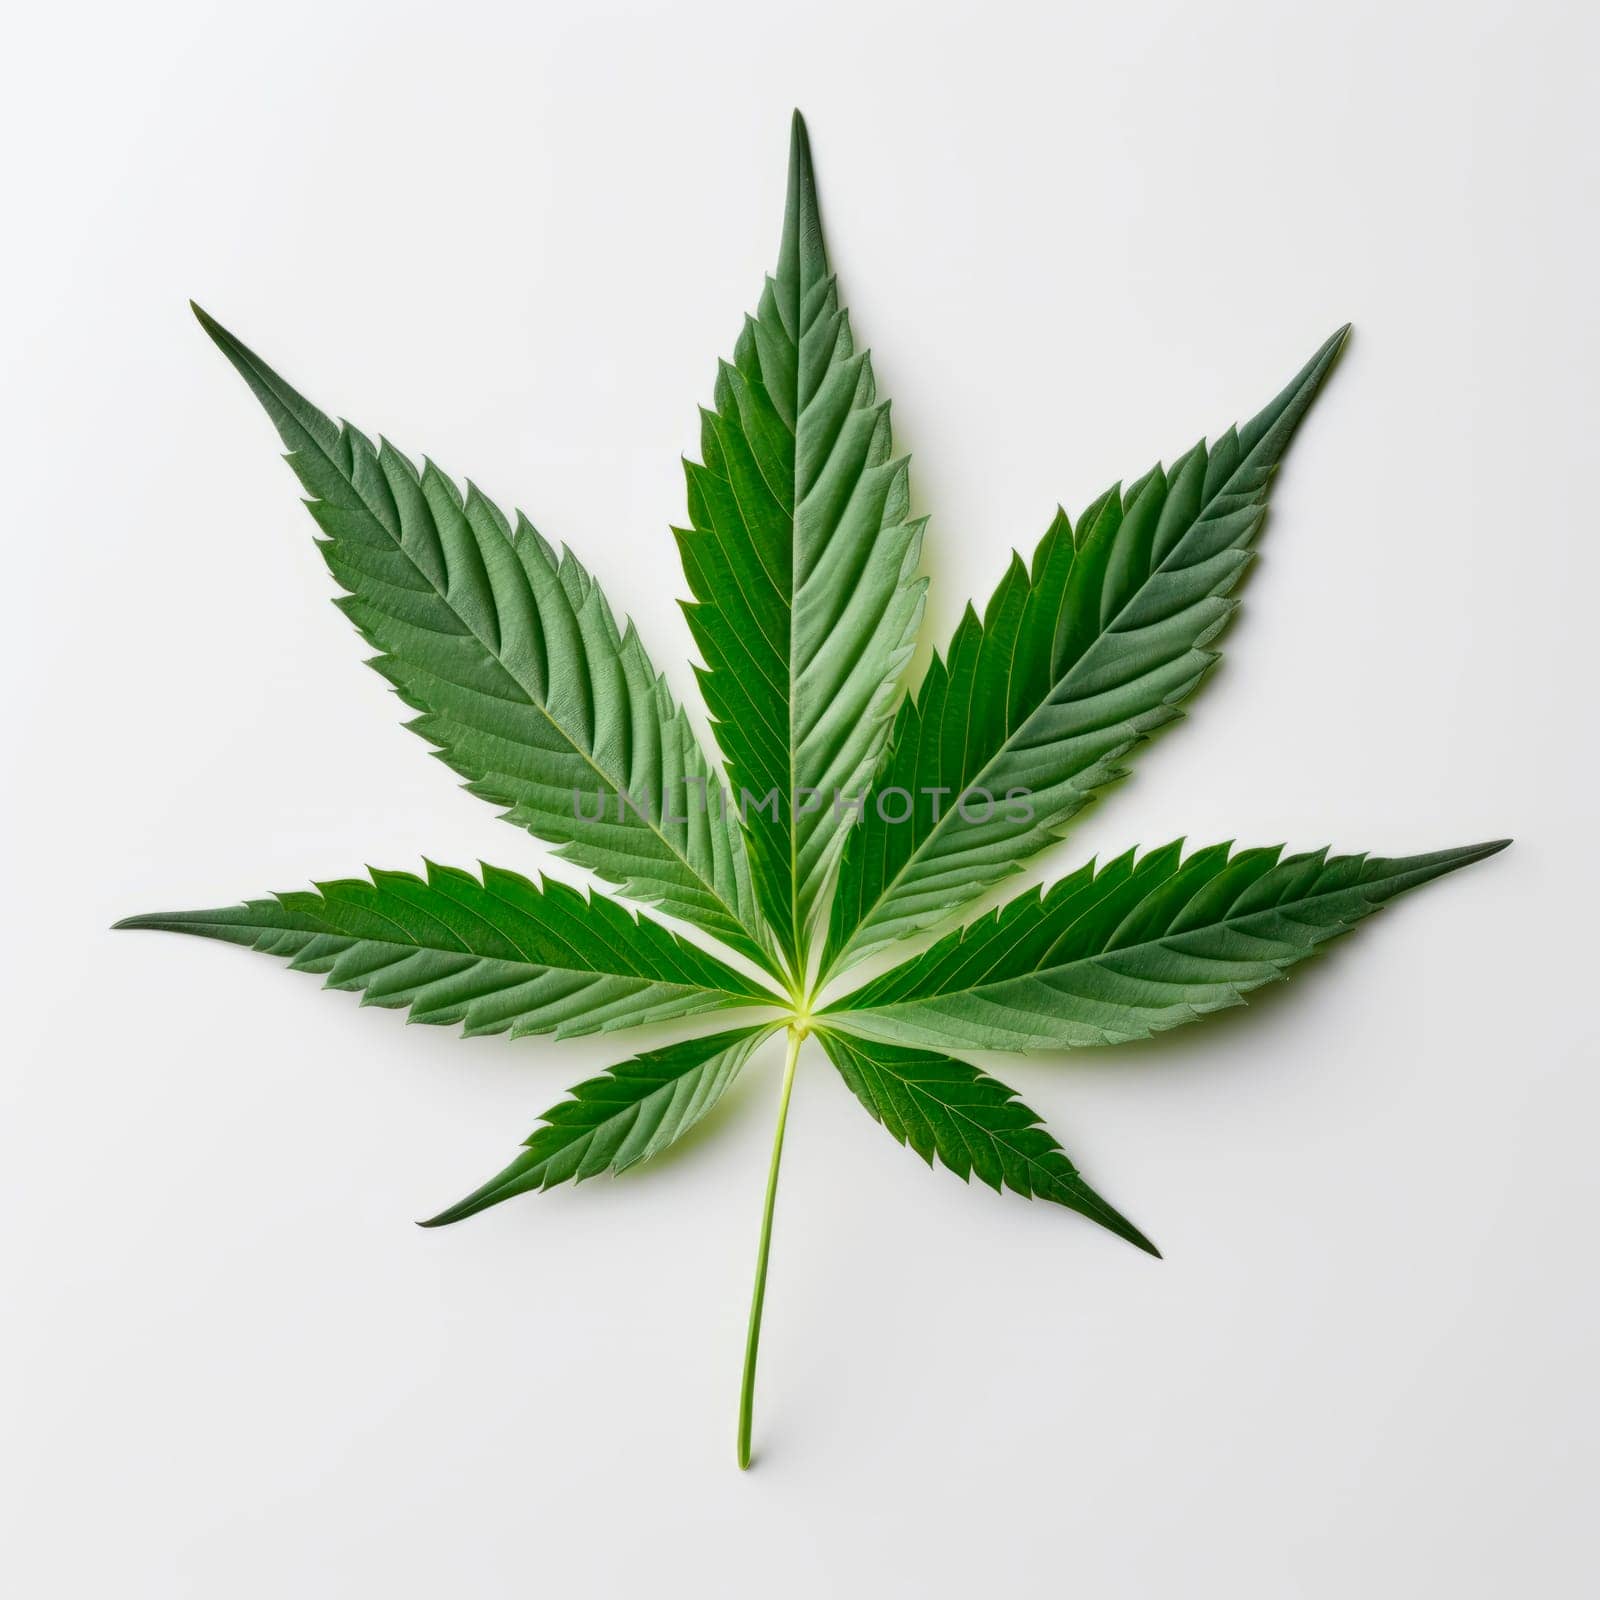 A cannabis leaf on a bright background. Minimalism. by Spirina